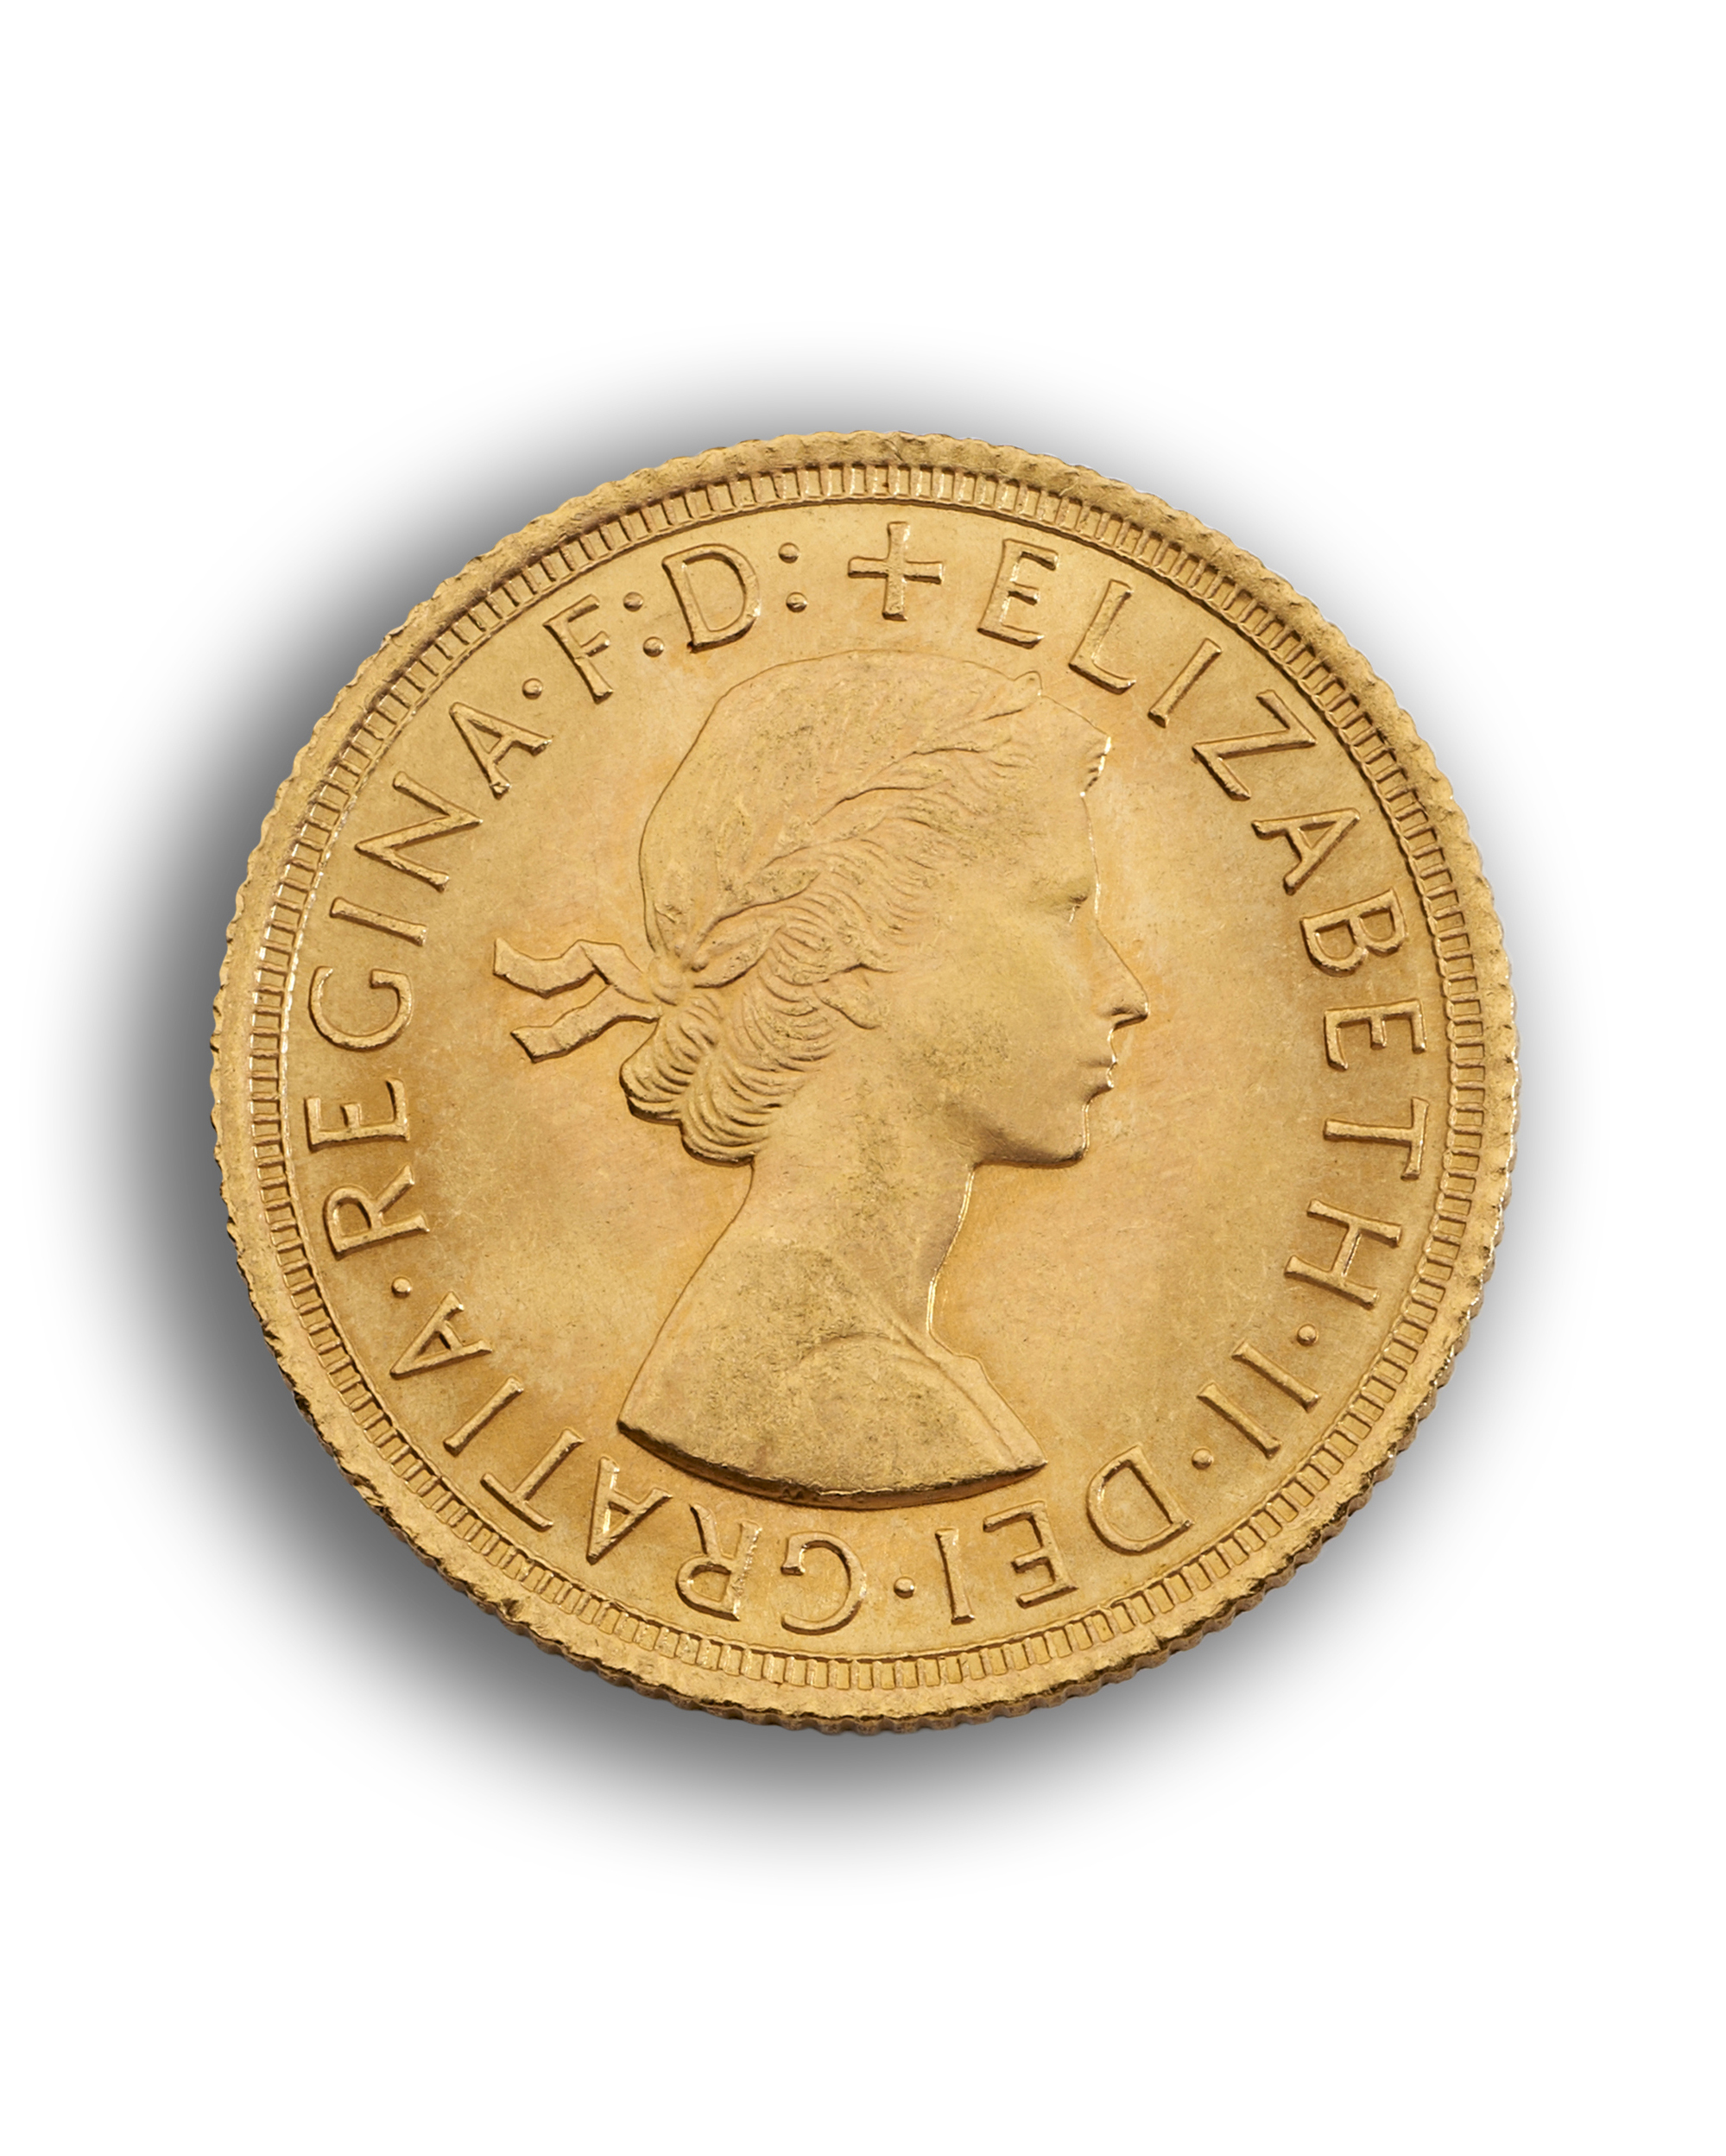 Queen Elizabeth II Gold Sovereign - Pre Decimal